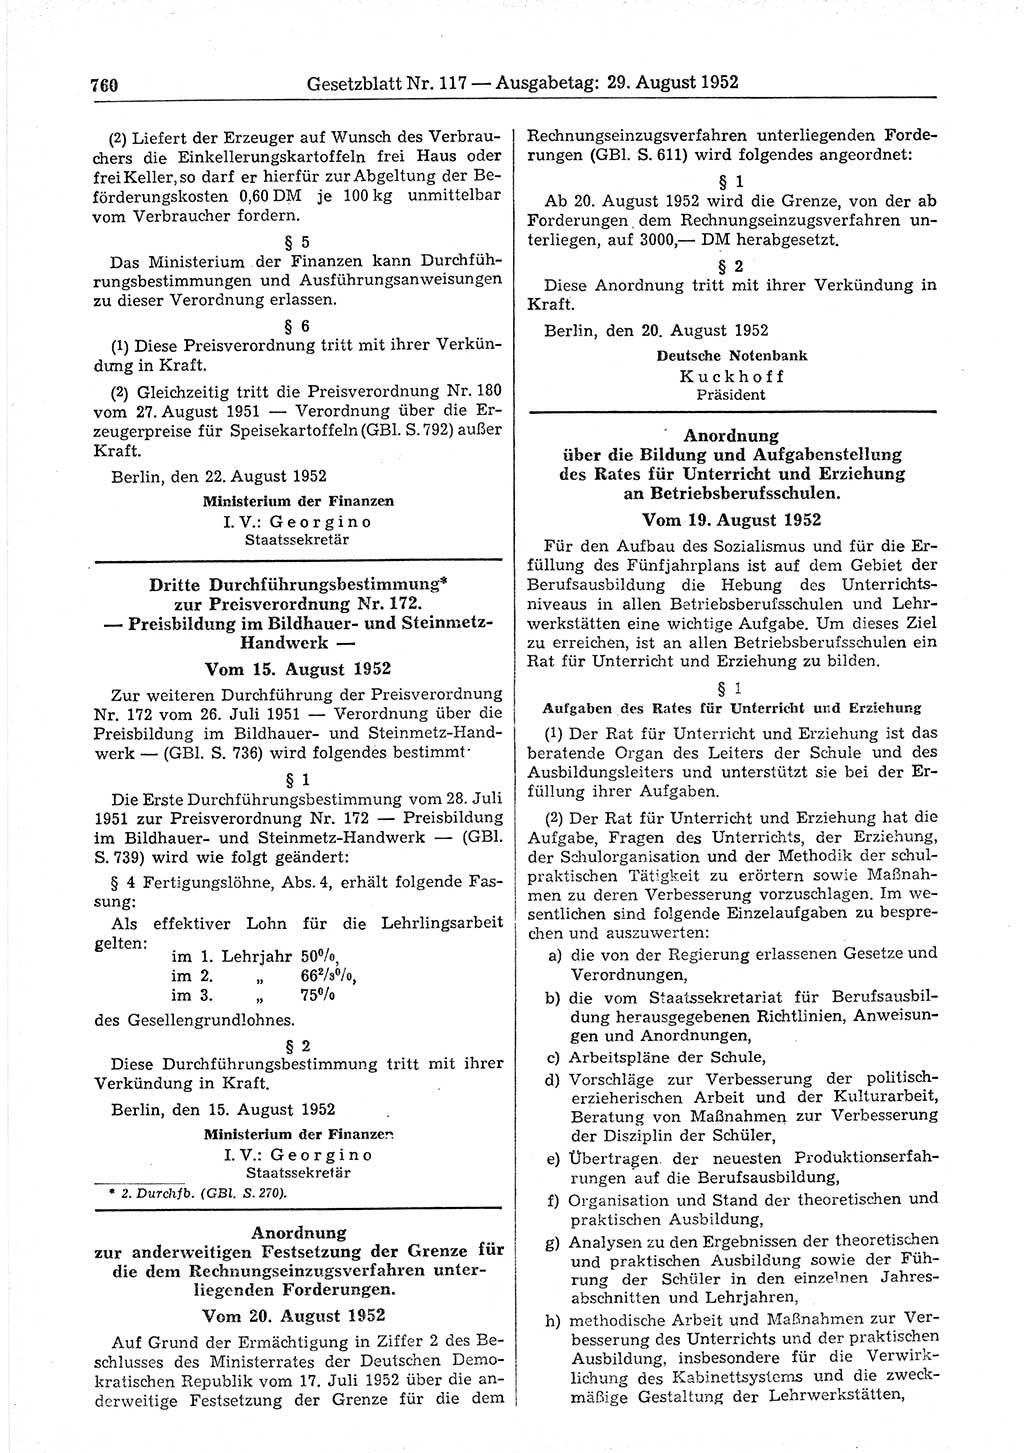 Gesetzblatt (GBl.) der Deutschen Demokratischen Republik (DDR) 1952, Seite 760 (GBl. DDR 1952, S. 760)